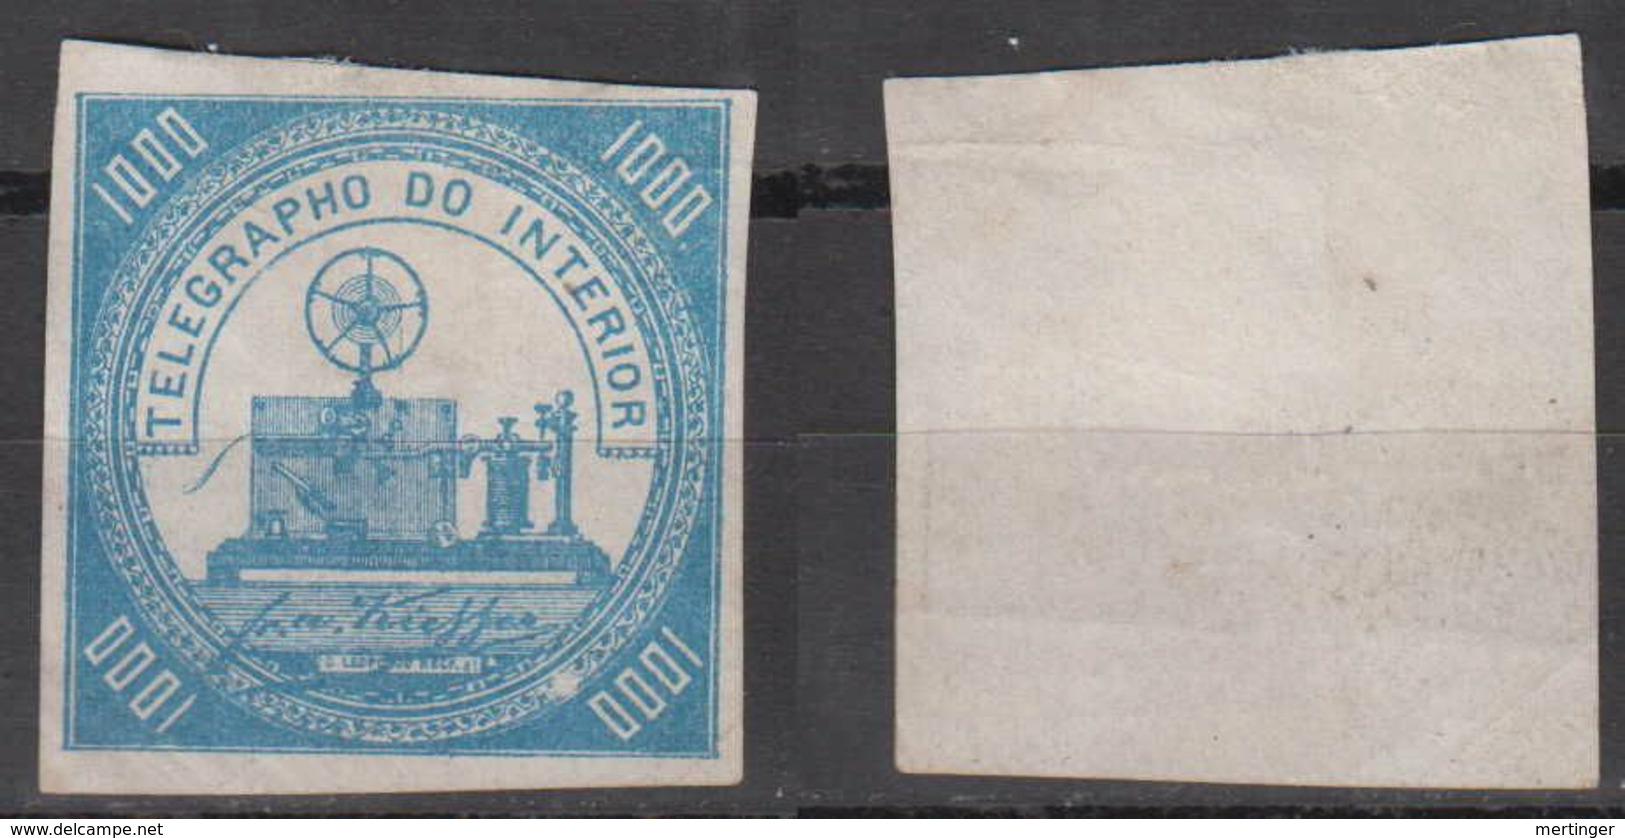 Brazil Brasil Telegrafo Telegraph 1871 1000R (*) Mint Kiefer Error Ball Over 1000 - Telegraphenmarken